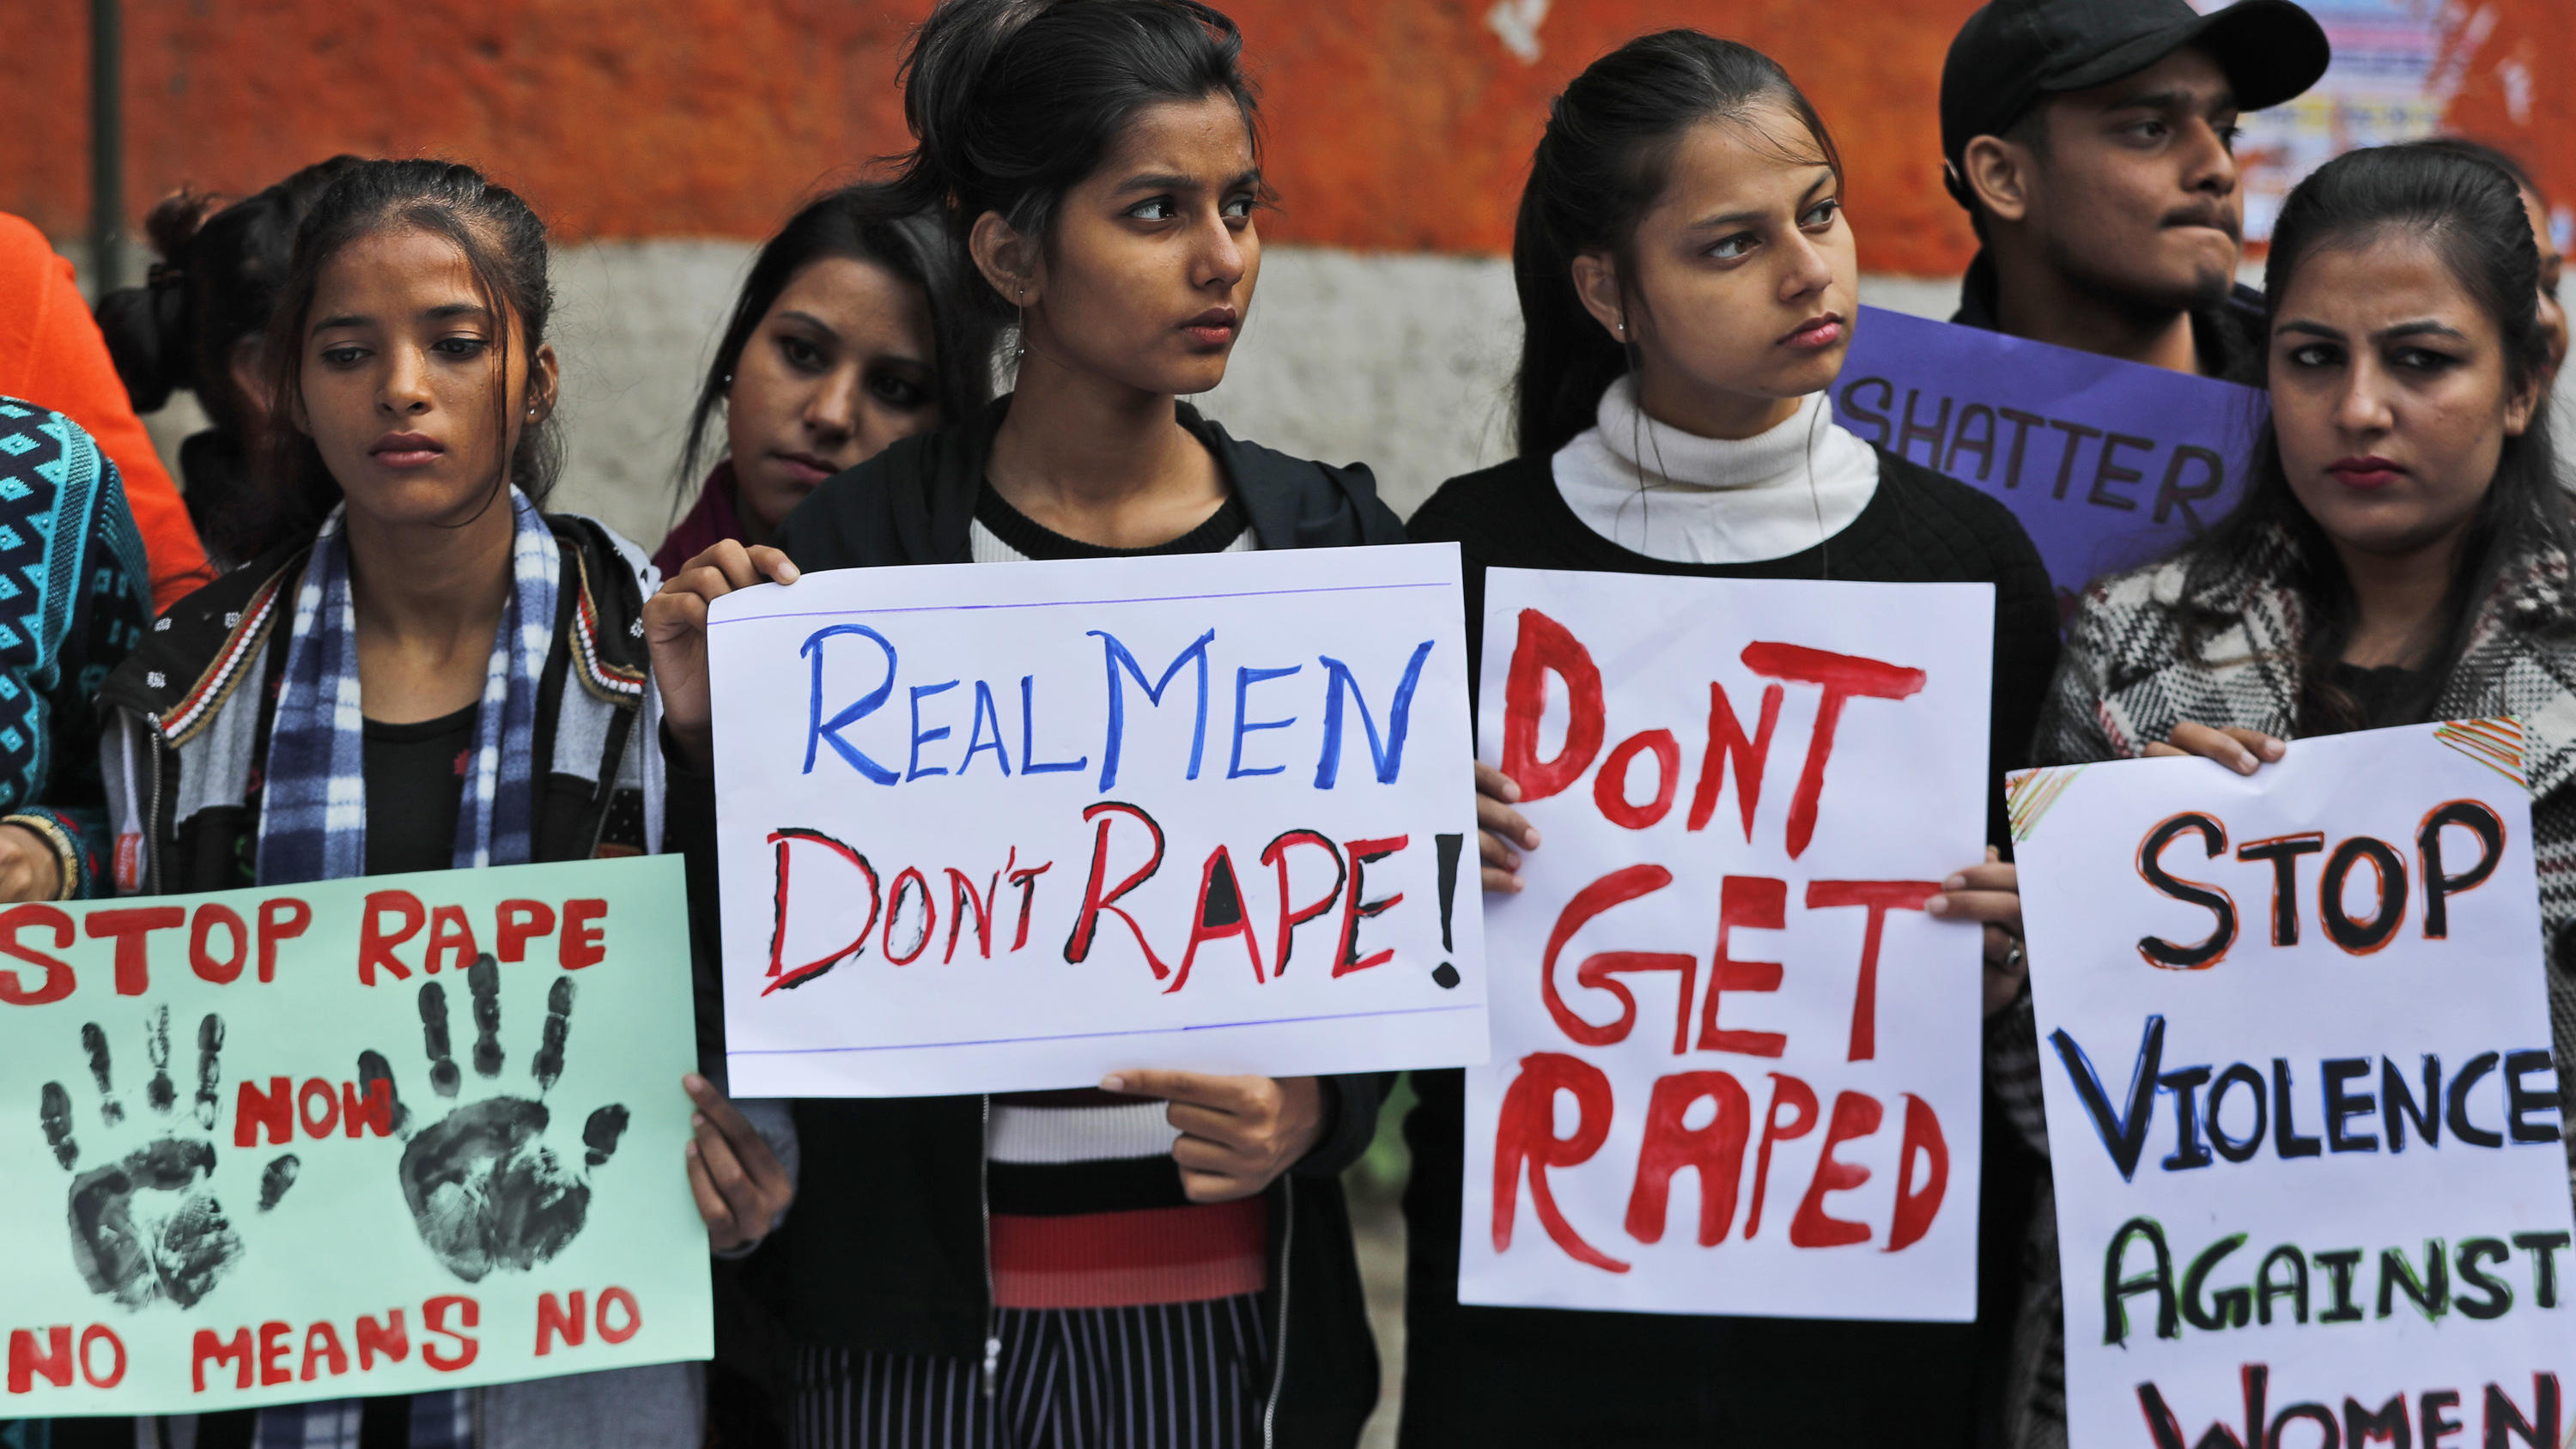 Proteste gegen Vergewaltigungen in Indien